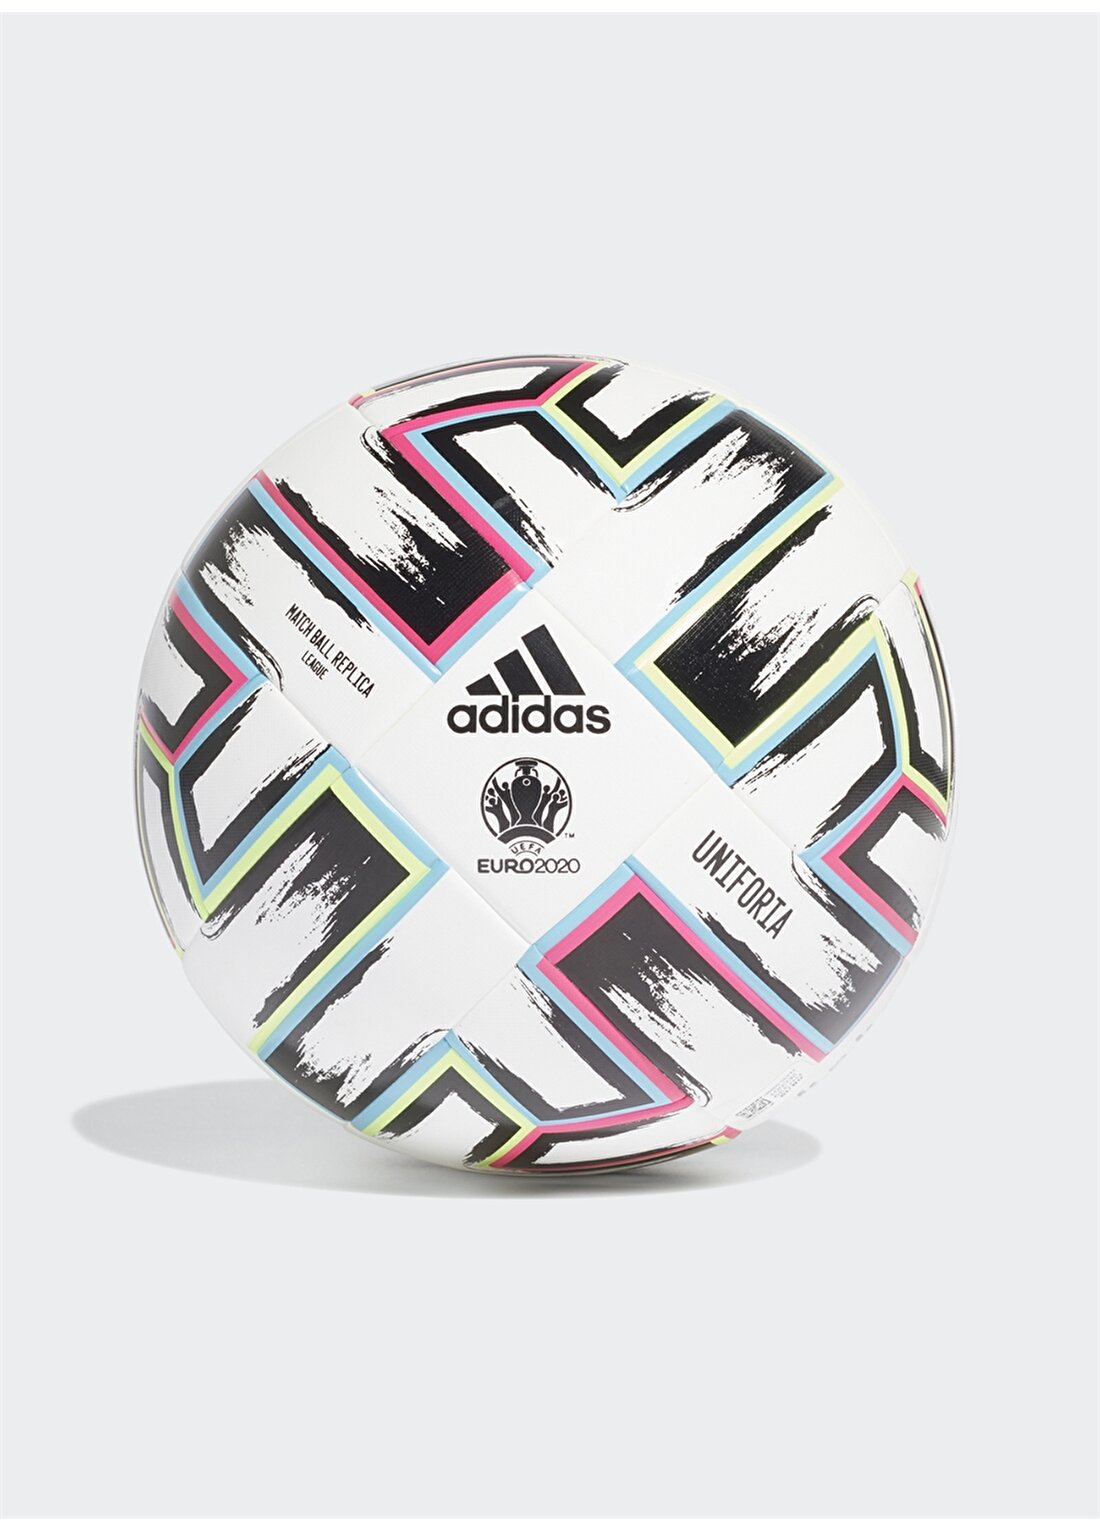 Adidas Fh7339 Euro20 Ttrn Futbol Topu